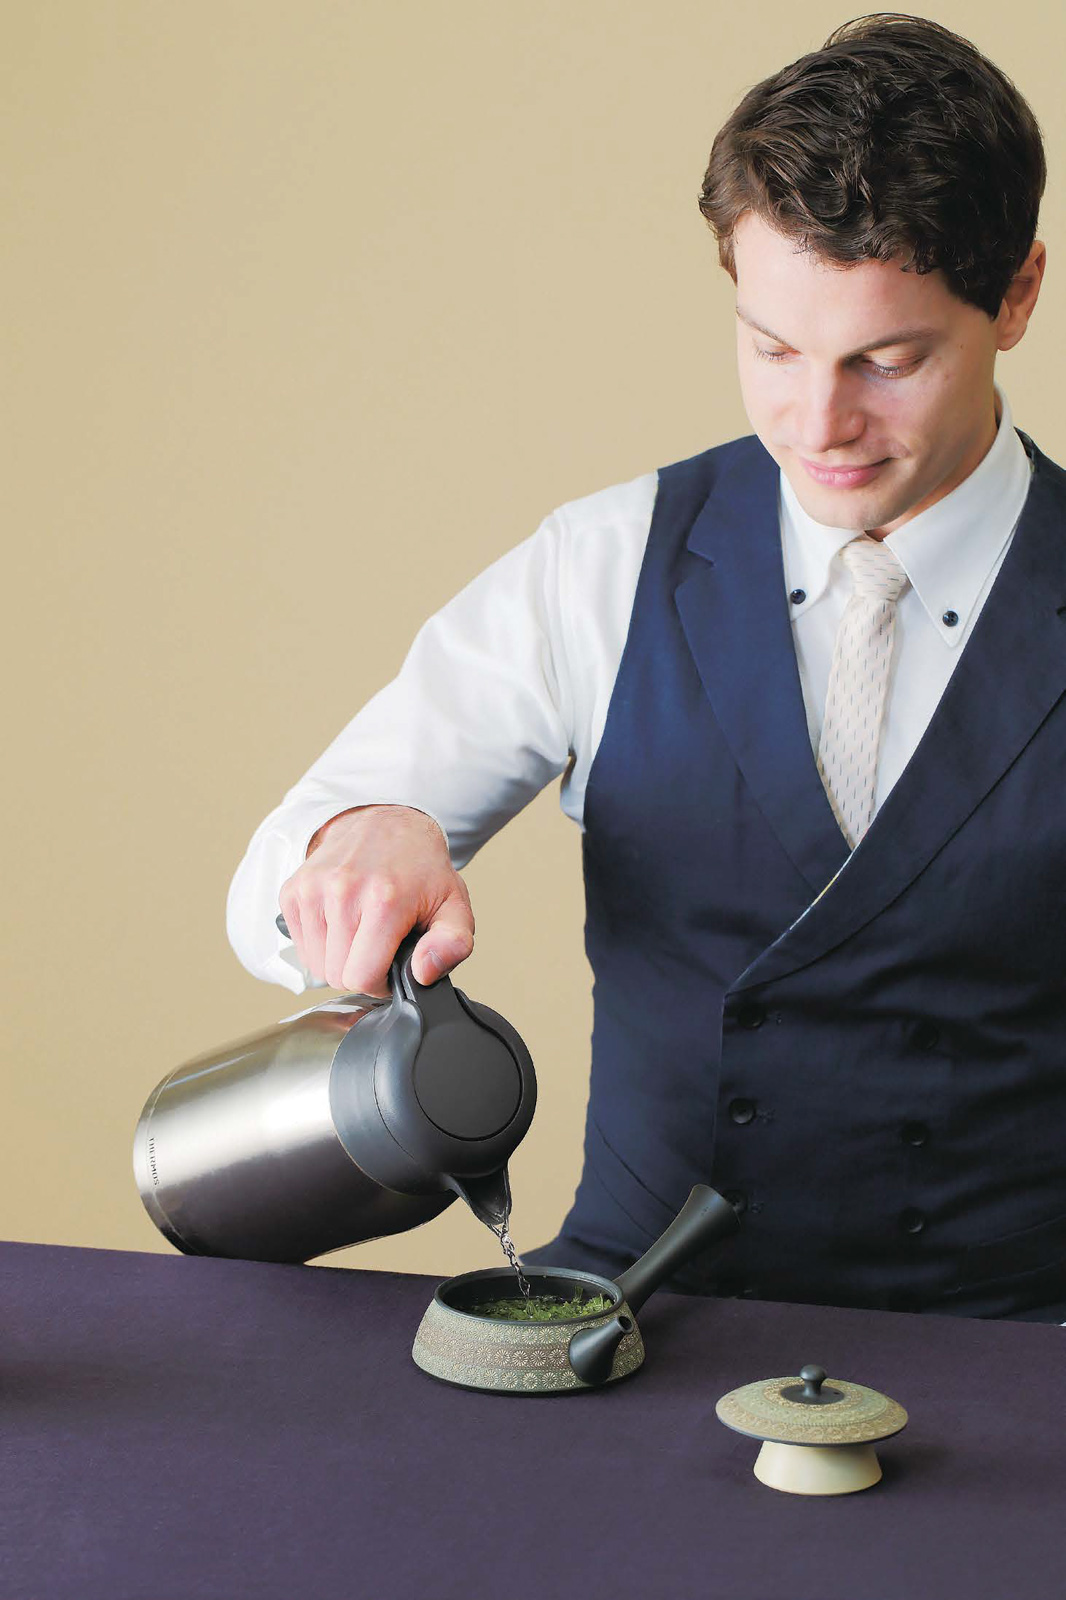 Oscar Brekell - Beginner's Guide to Japanese Tea